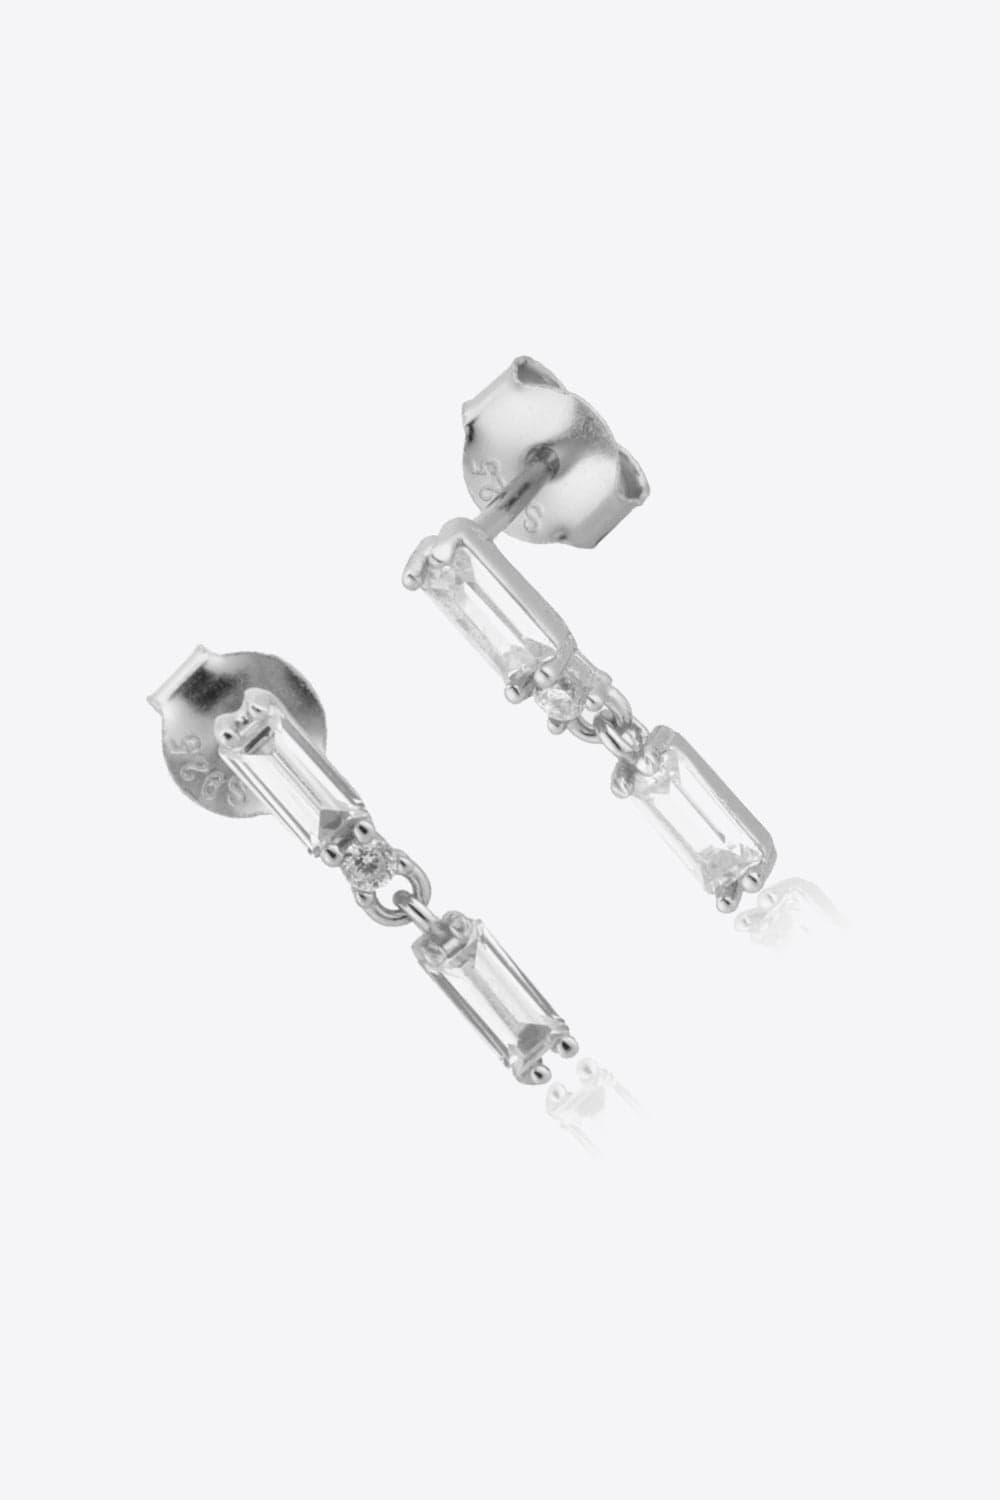 Zircon 925 Sterling Silver Drop Earrings - Body By J'ne